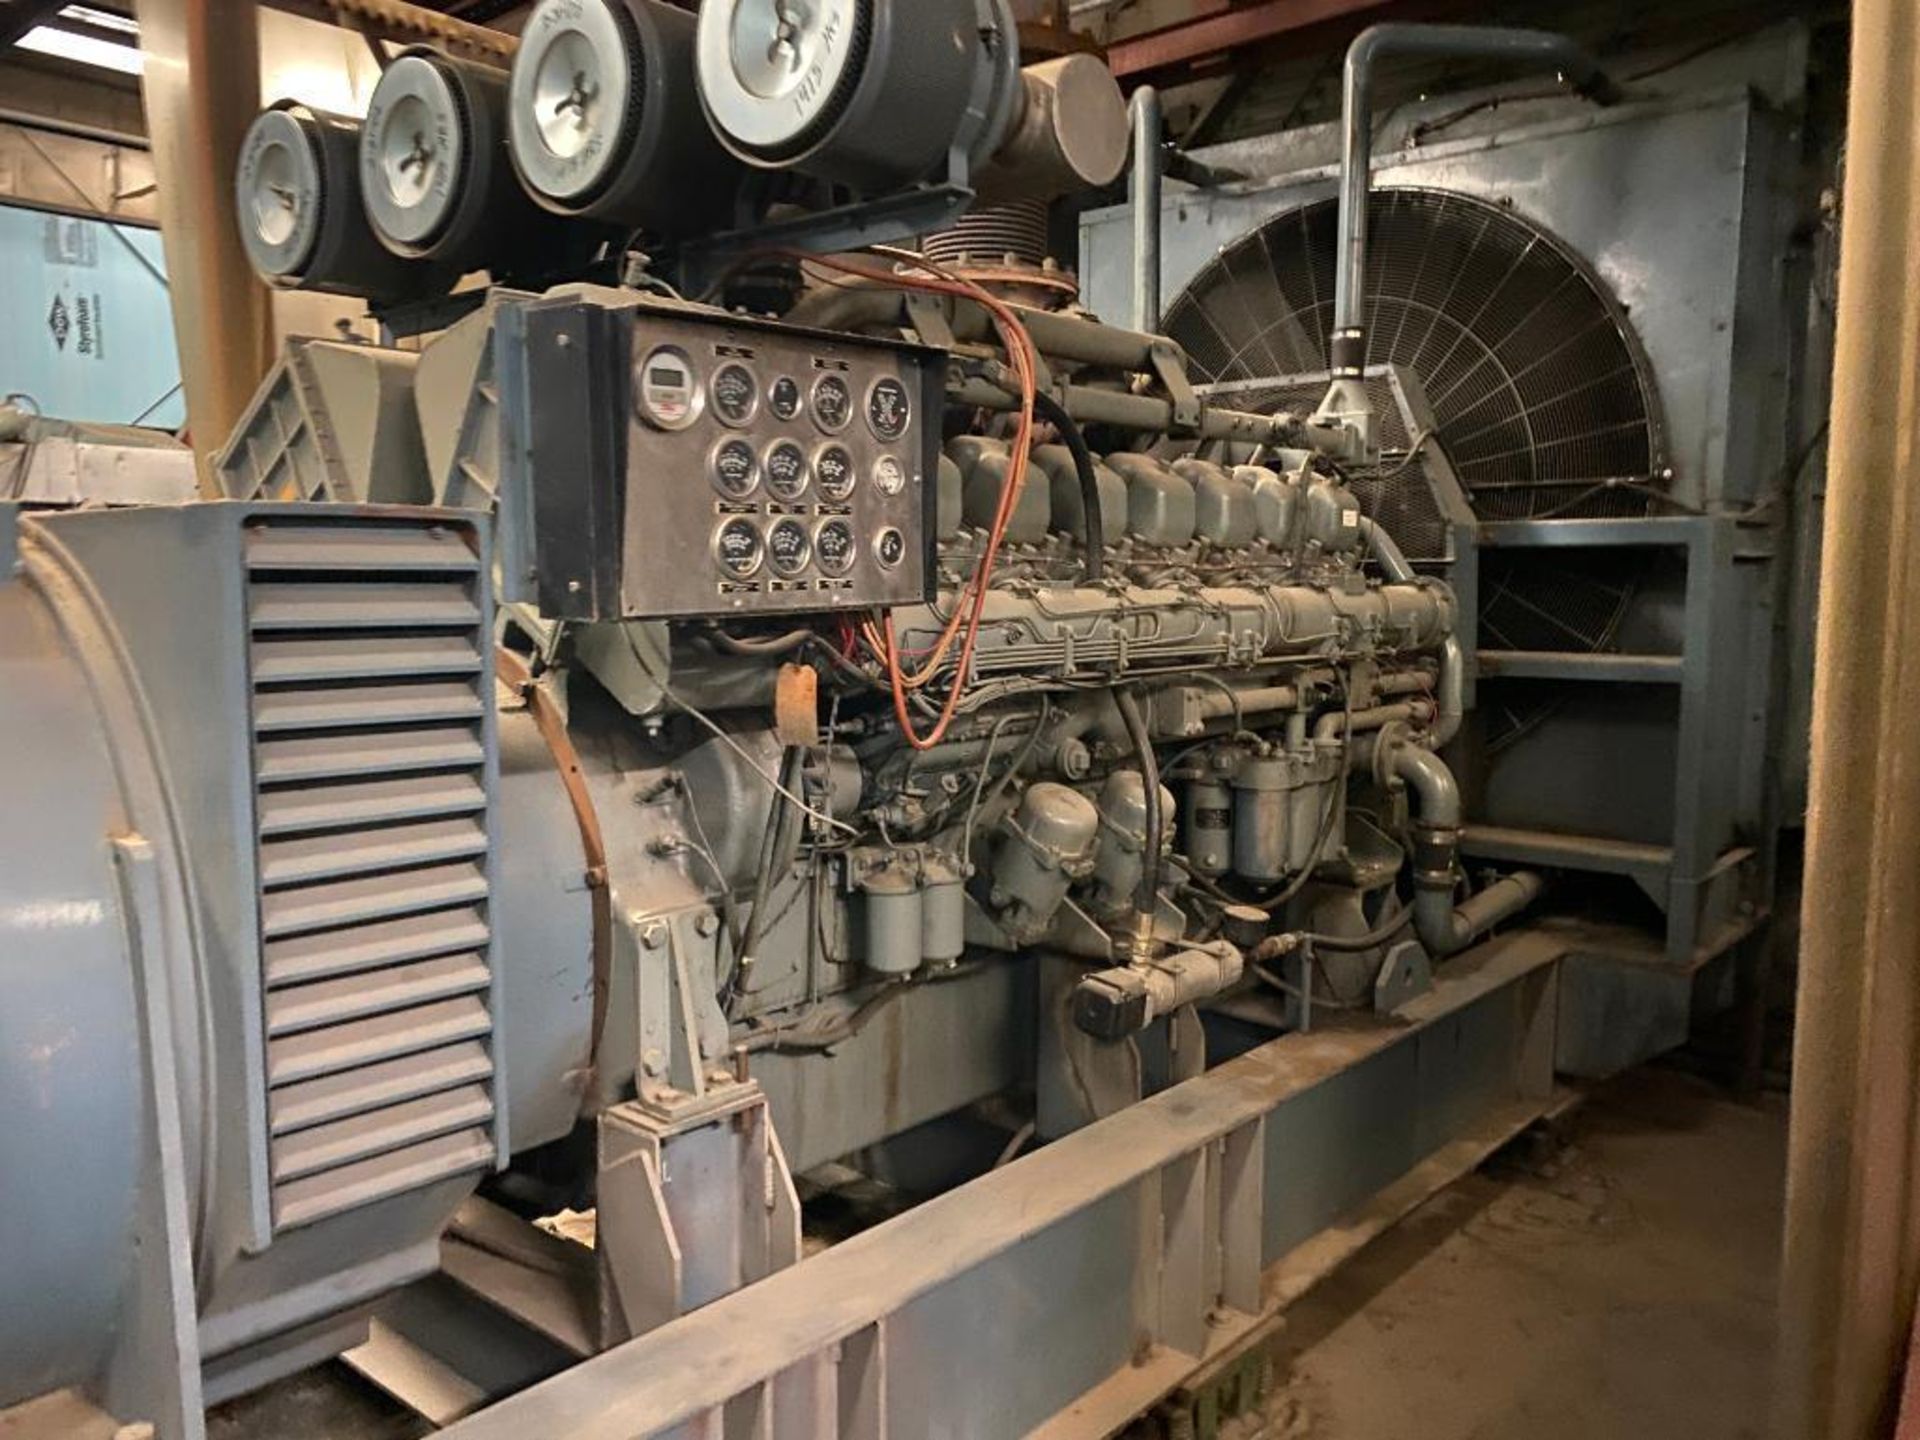 1990 LeRoy Somer 1875 KVA Generator, Type PA100G115-70-P4, w/ Mitsubishi 16-Cylinder Diesel, Model S - Image 3 of 13